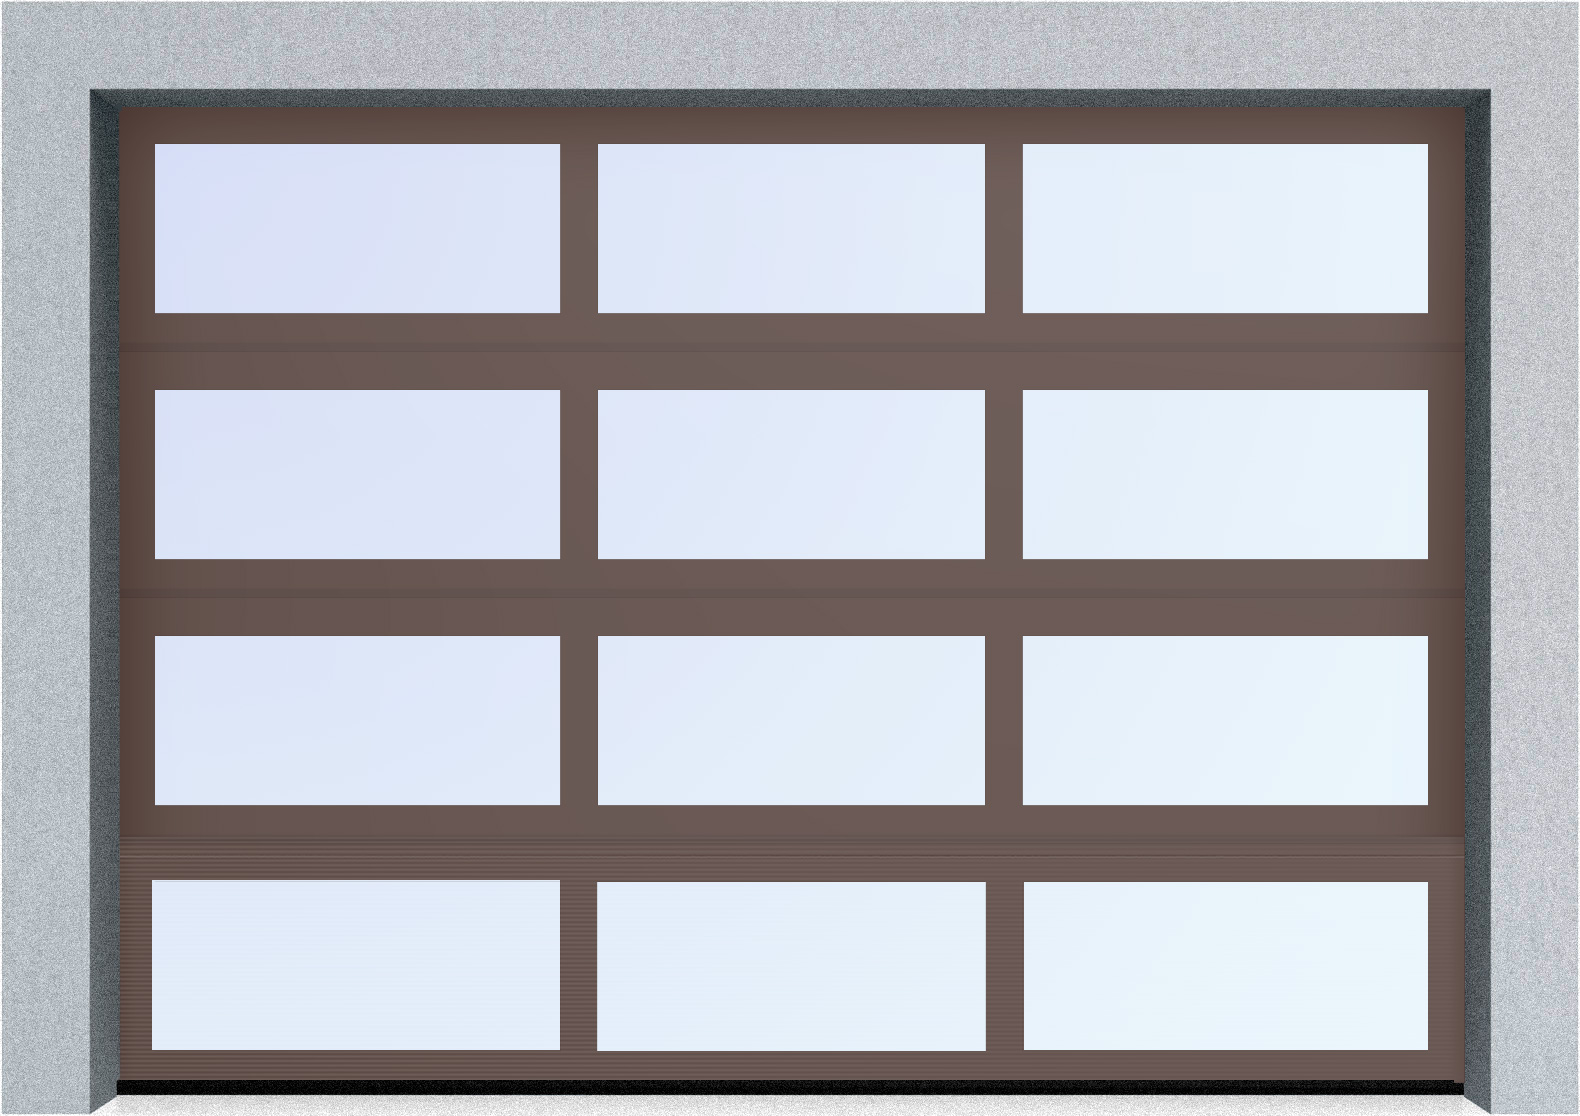  Секционные панорамные ворота серии AluTrend (АЛП) 2125х2250 нижняя панель стандартные цвета, фото 7 